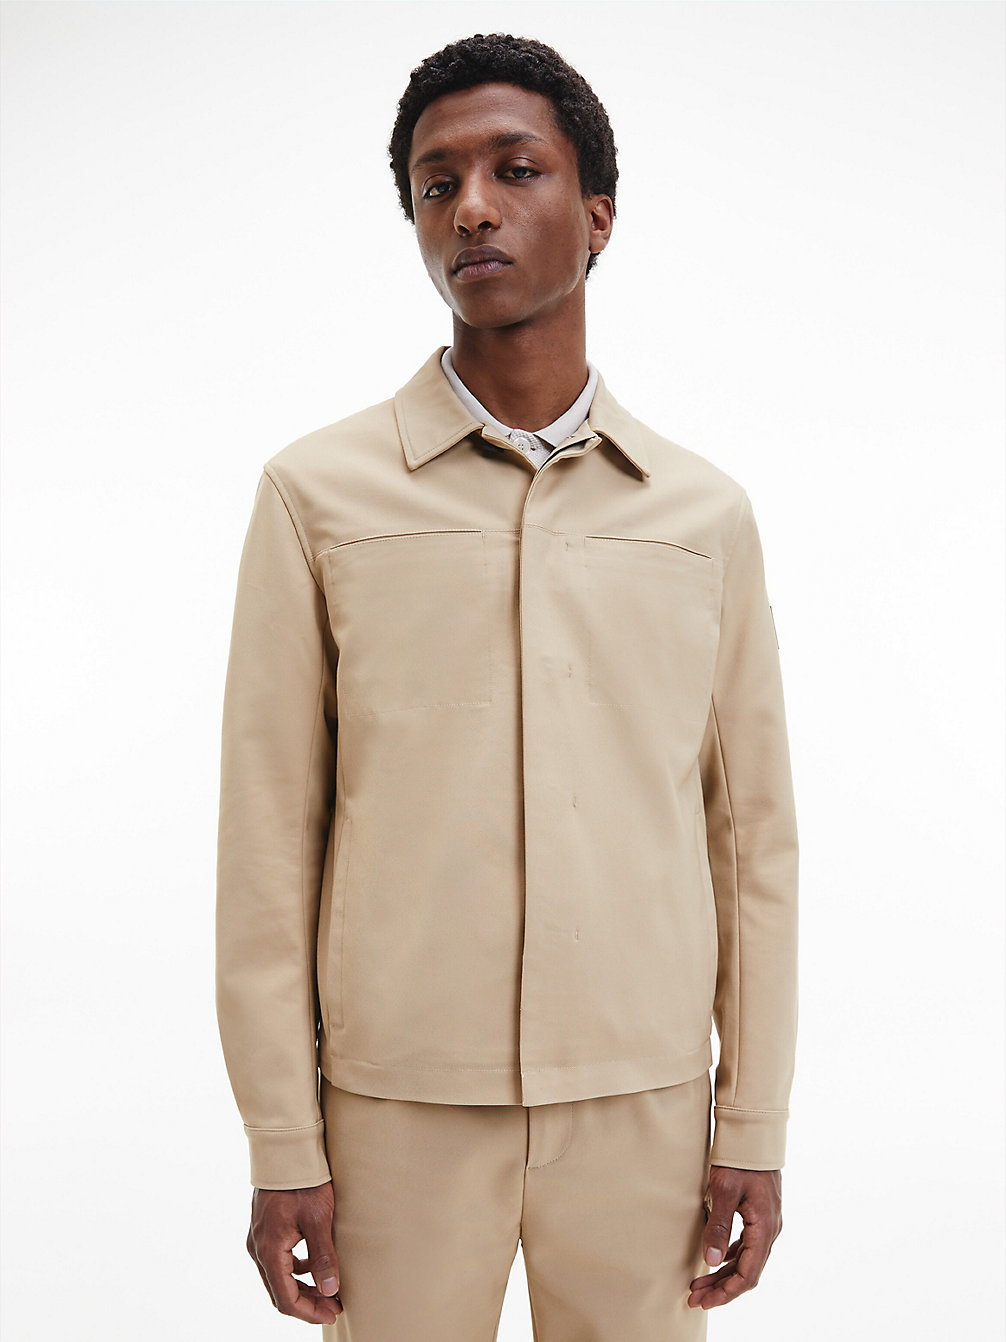 TRAVERTINE Shirt Jacket undefined men Calvin Klein